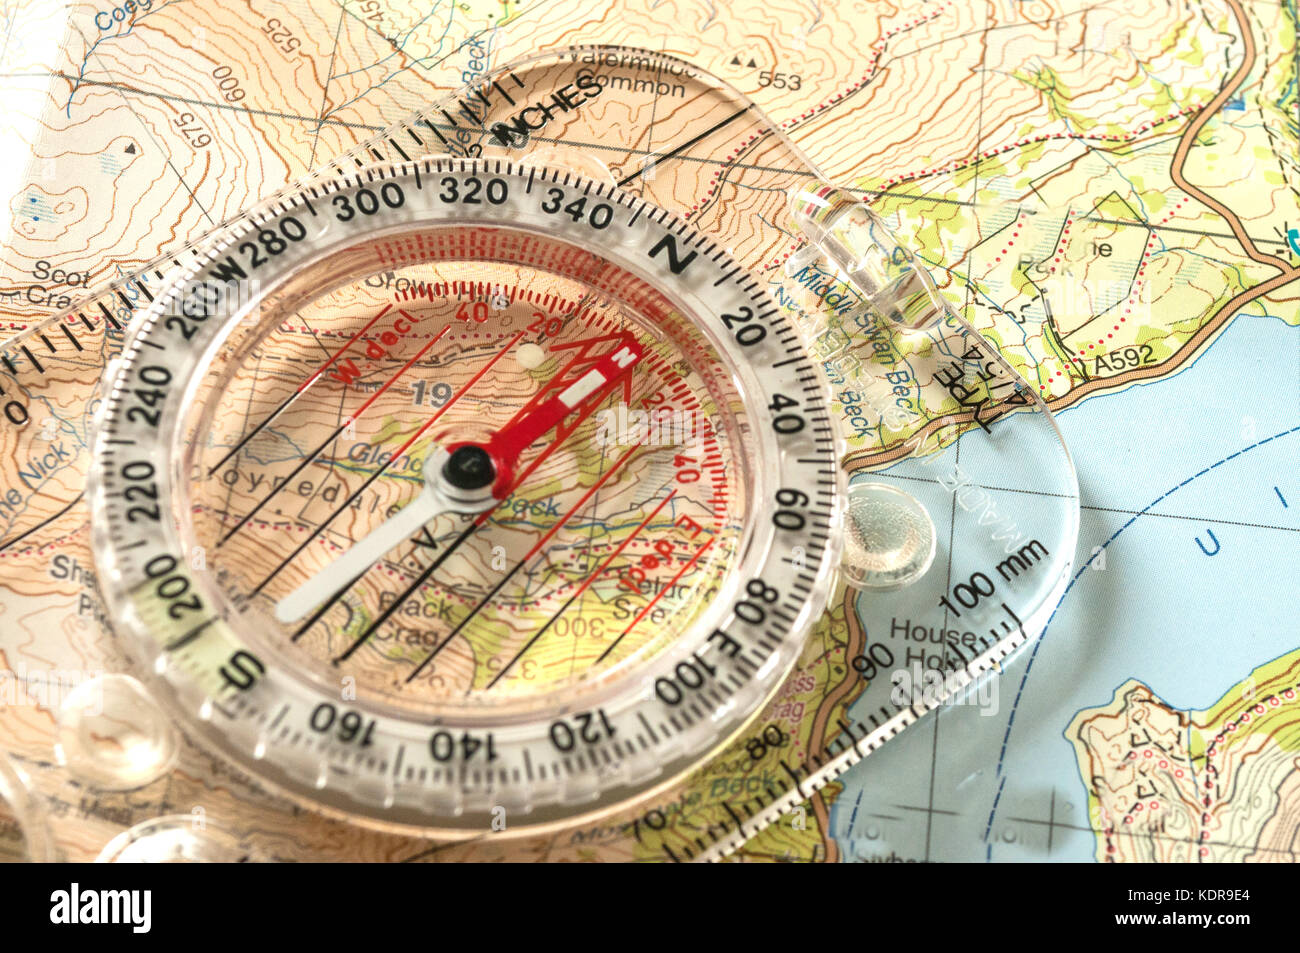 Kompass zeigt Richtung auf topografischer Karte, mit Rettungspfeife, geringe Schärfentiefe Stockfoto